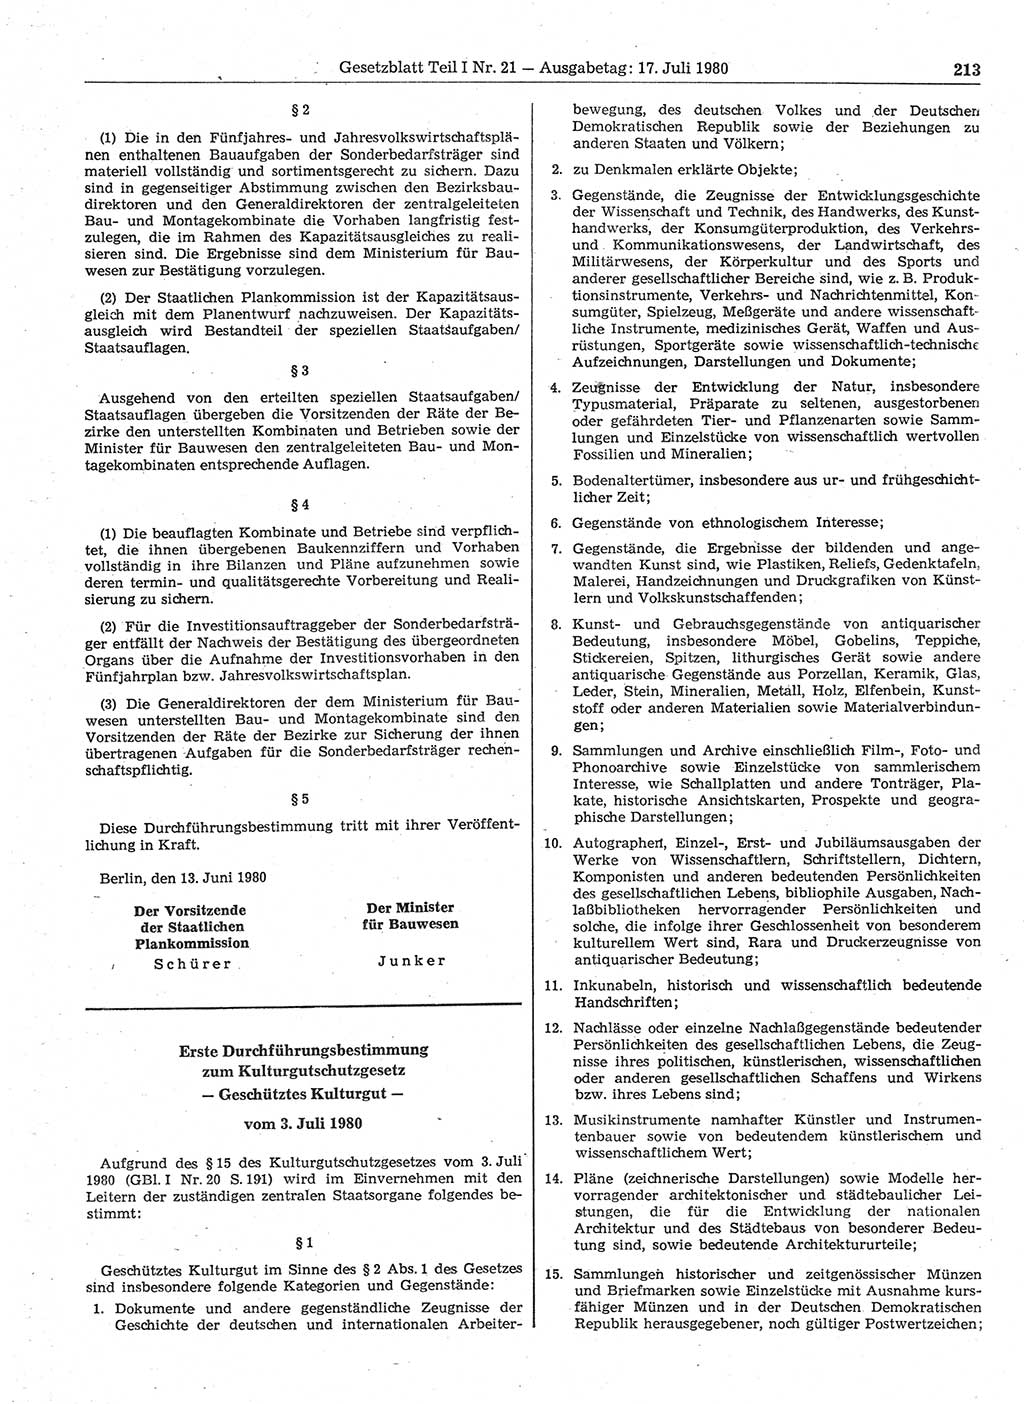 Gesetzblatt (GBl.) der Deutschen Demokratischen Republik (DDR) Teil Ⅰ 1980, Seite 213 (GBl. DDR Ⅰ 1980, S. 213)